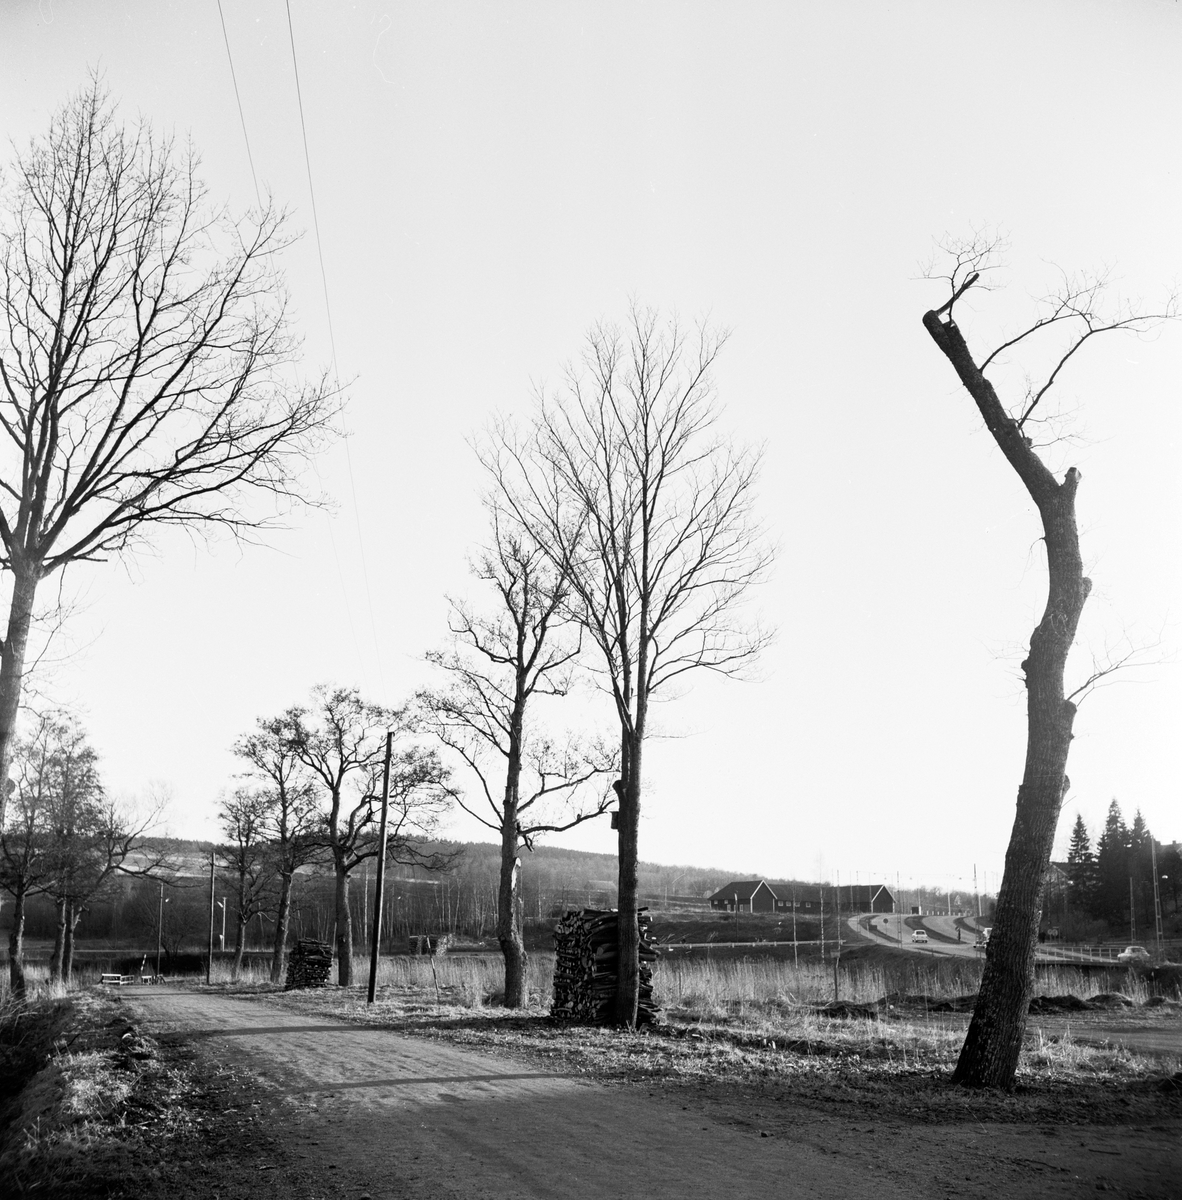 Vägen leder till Kavlabron förbi Rumlaborg i Huskvarna. I bakgrunden syns Öxnehaga och till höger går Riksettan förbi Sanna gård.